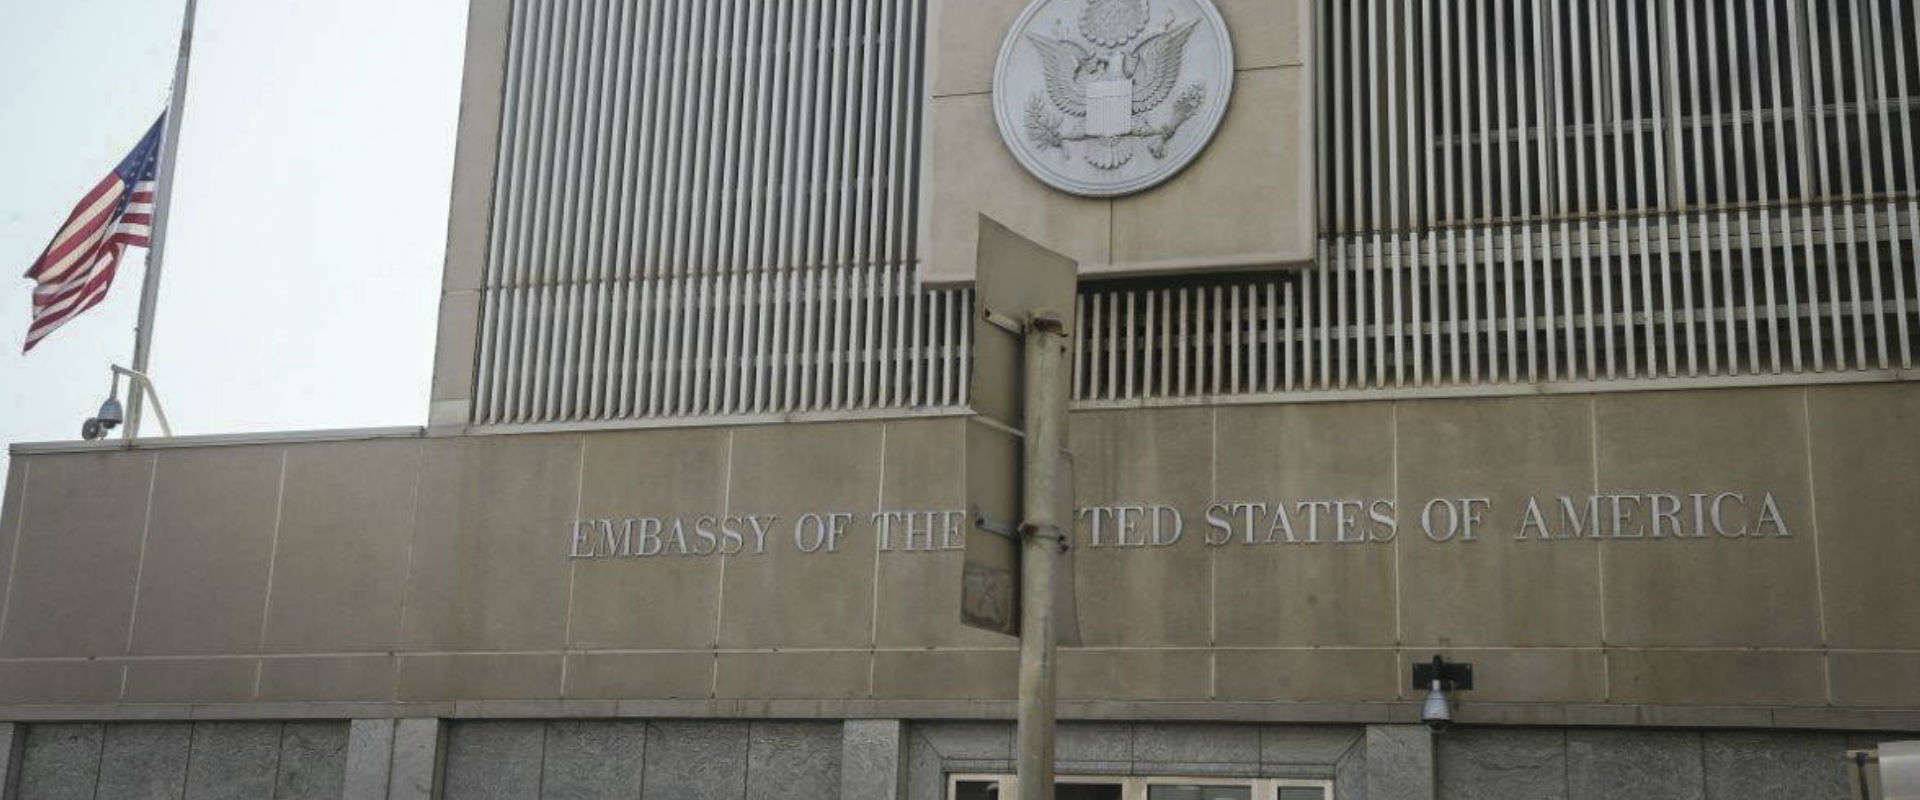 שגרירות ארה"ב בתל-אביב